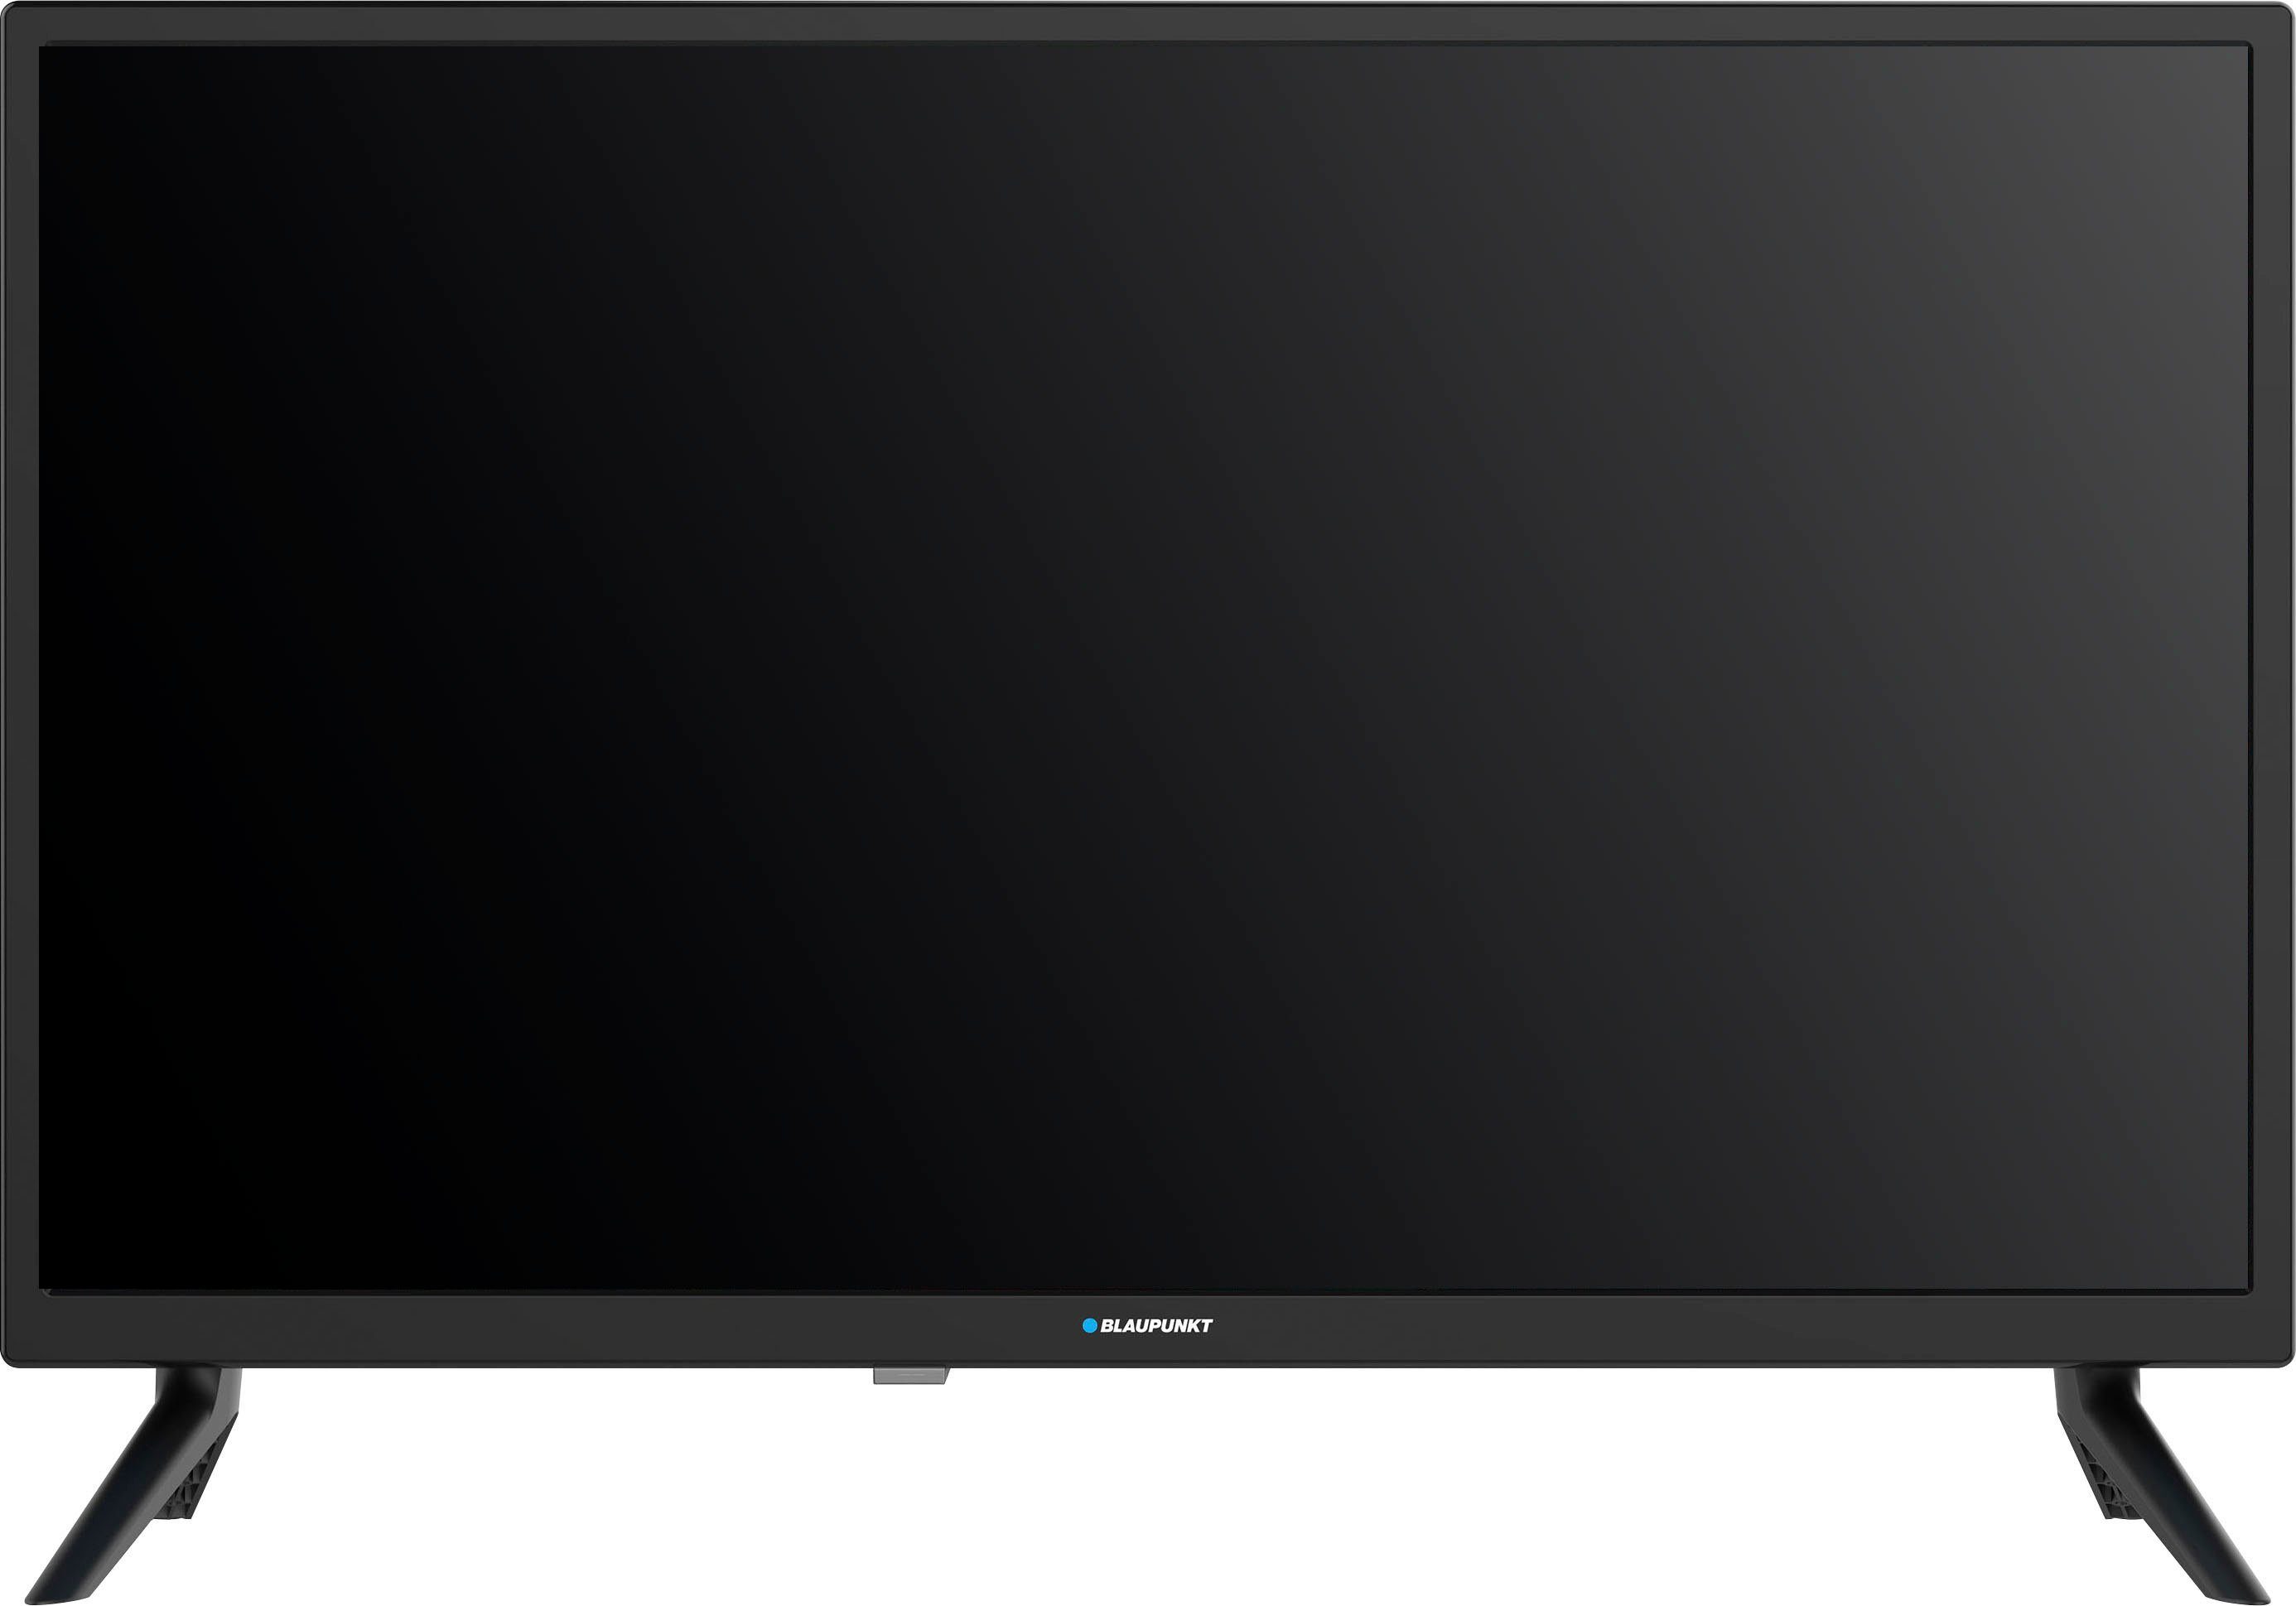 Blaupunkt 24H1372Ex LED-Fernseher (60 cm/24 Zoll, HD)